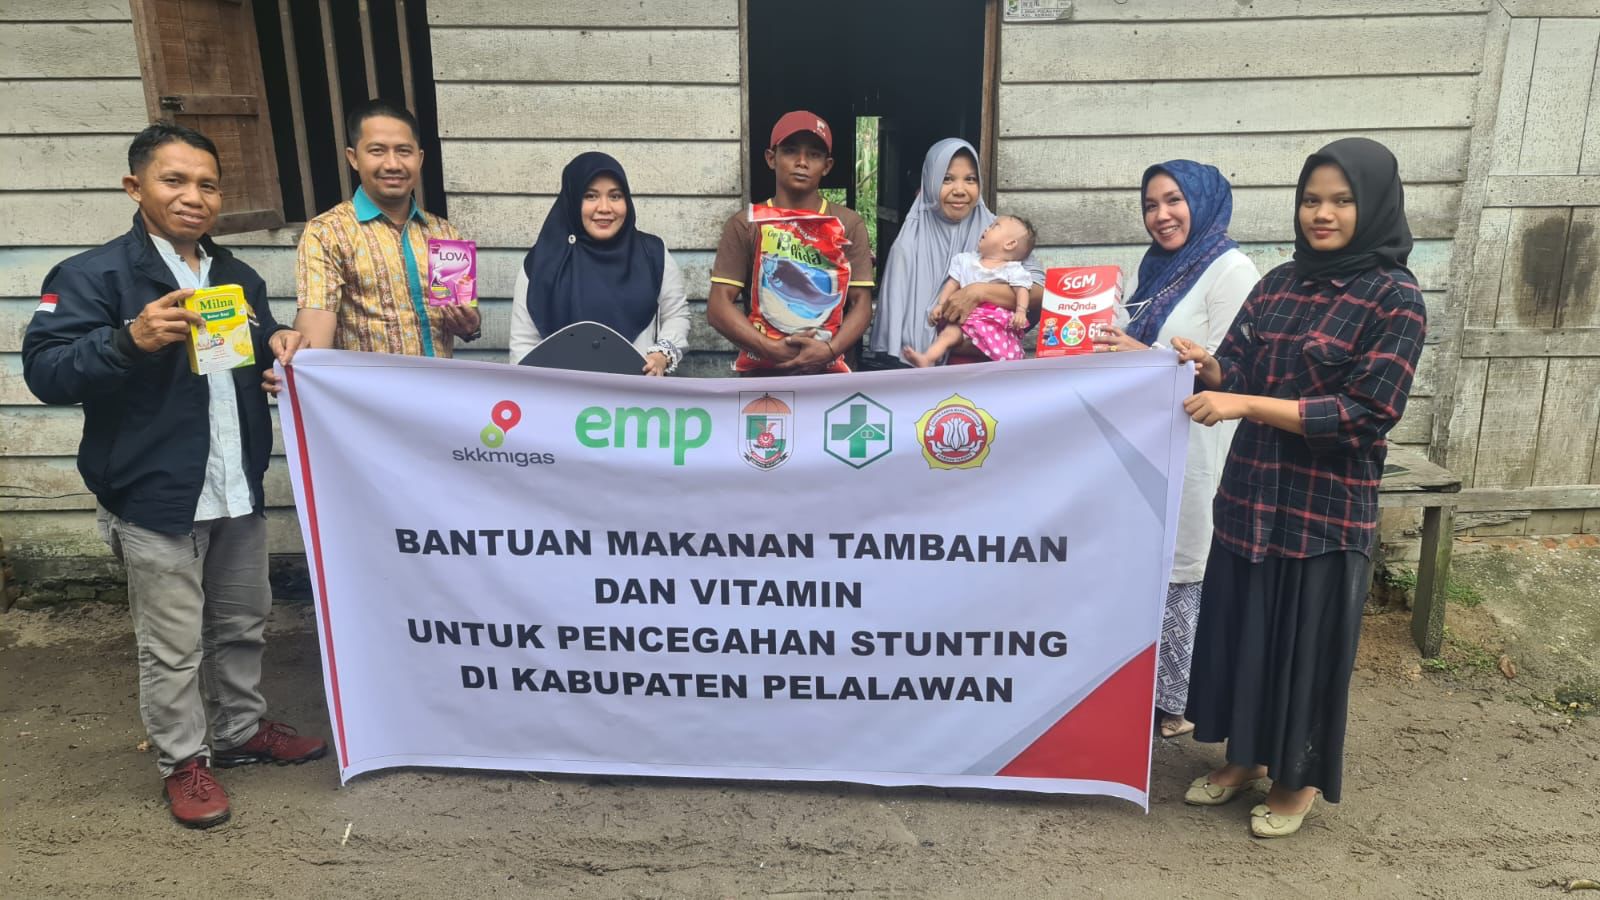 EMP Bentu Ltd Salurkan Sembako dan Vitamin ke Puskesmas untuk Turunkan Stunting